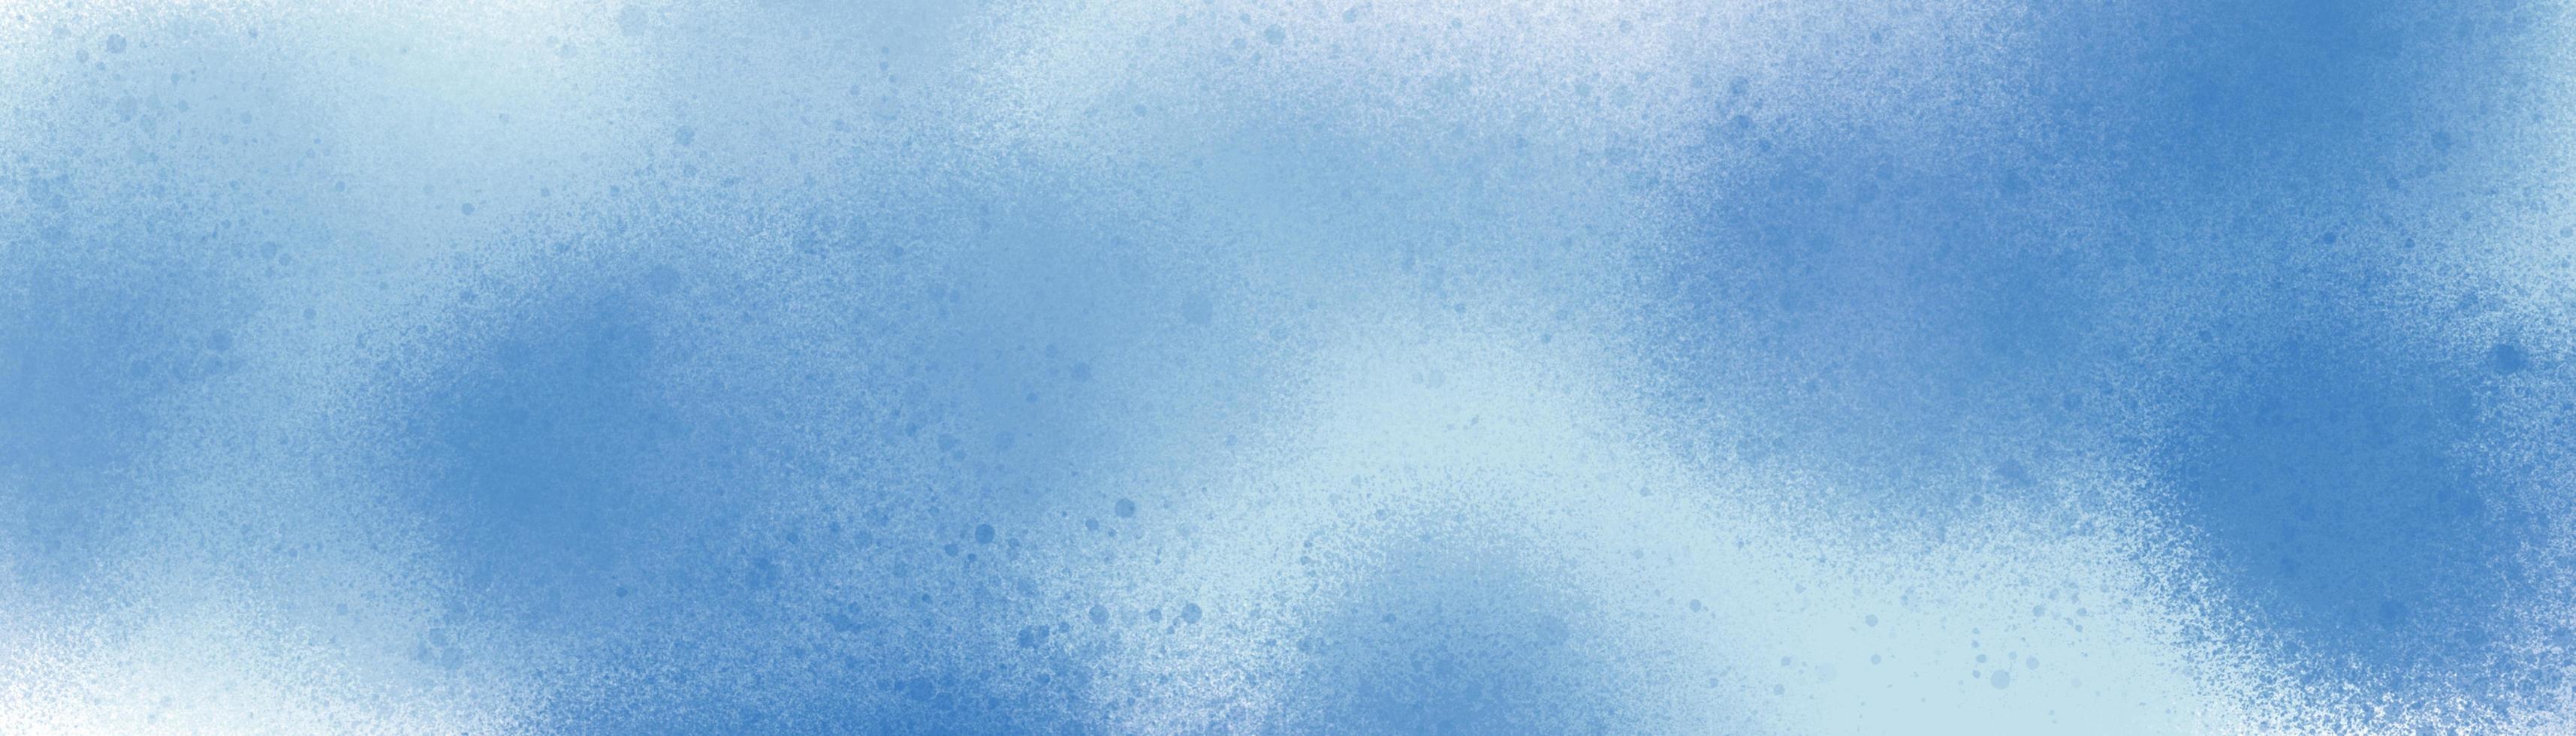 padrão de fundo abstrato com pincel salpicado pintado com cores de inverno. azul e branco em elementos de textura de pontos para design criativo. foto